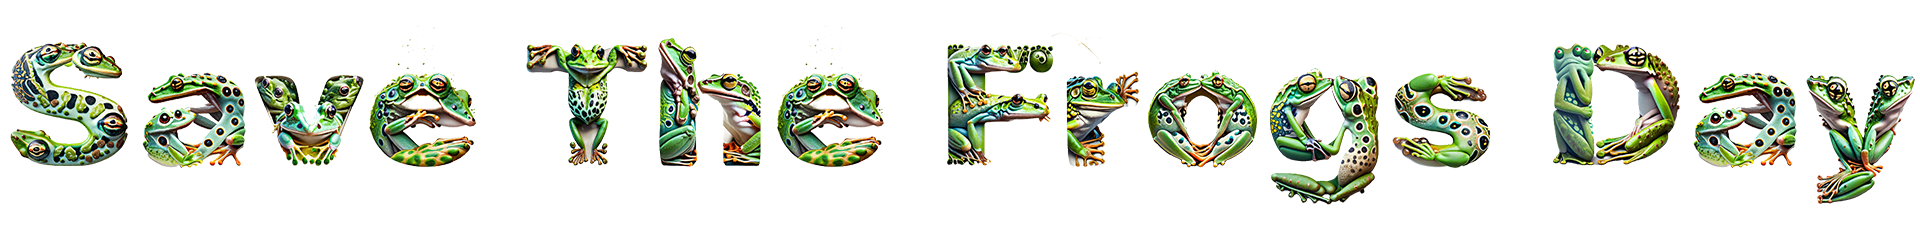 Save The Frogs Day टेक्स्ट - एडोब फ़ायरफ़्लाई